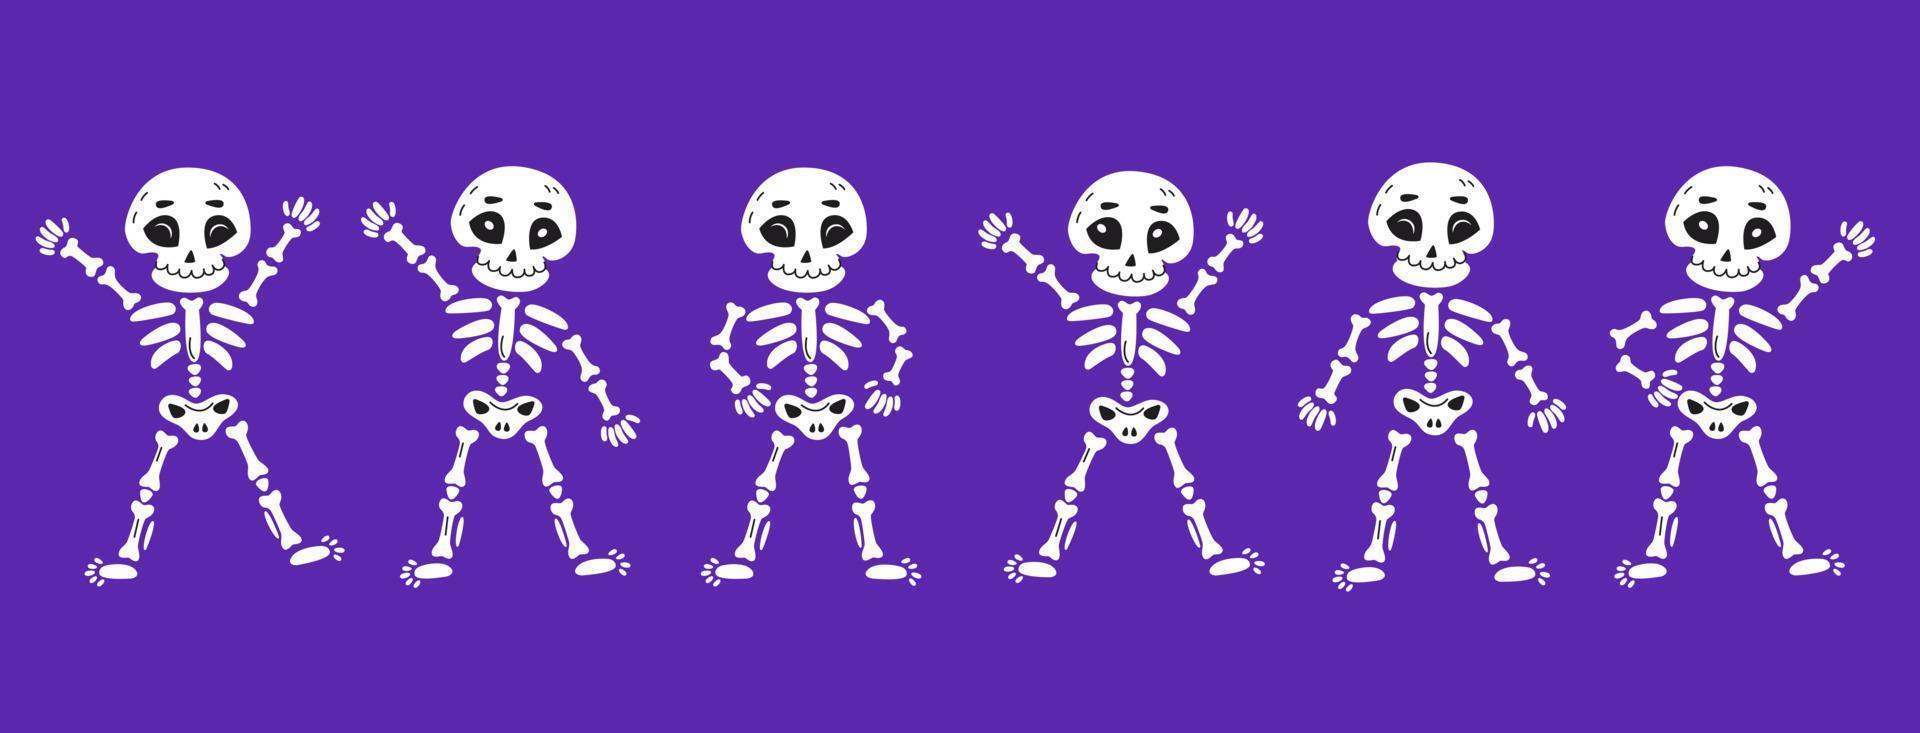 esqueletos dançantes engraçados em estilo cartoon desenhado à mão. dia dos mortos, ilustração em vetor conceito de halloween.